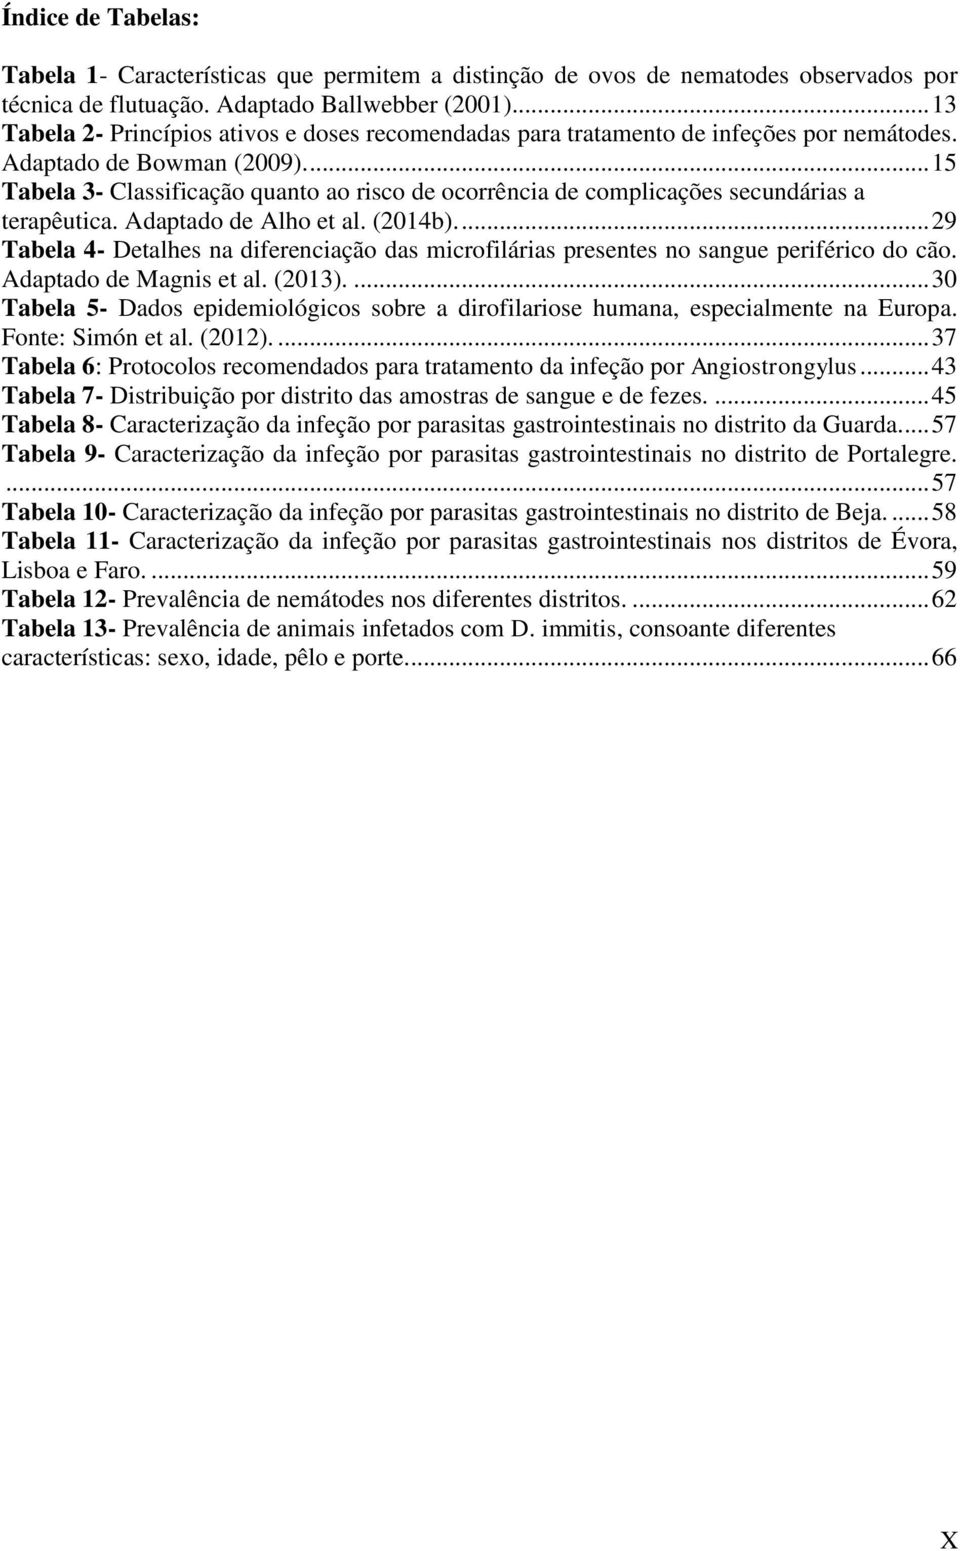 ... 15 Tabela 3- Classificação quanto ao risco de ocorrência de complicações secundárias a terapêutica. Adaptado de Alho et al. (2014b).